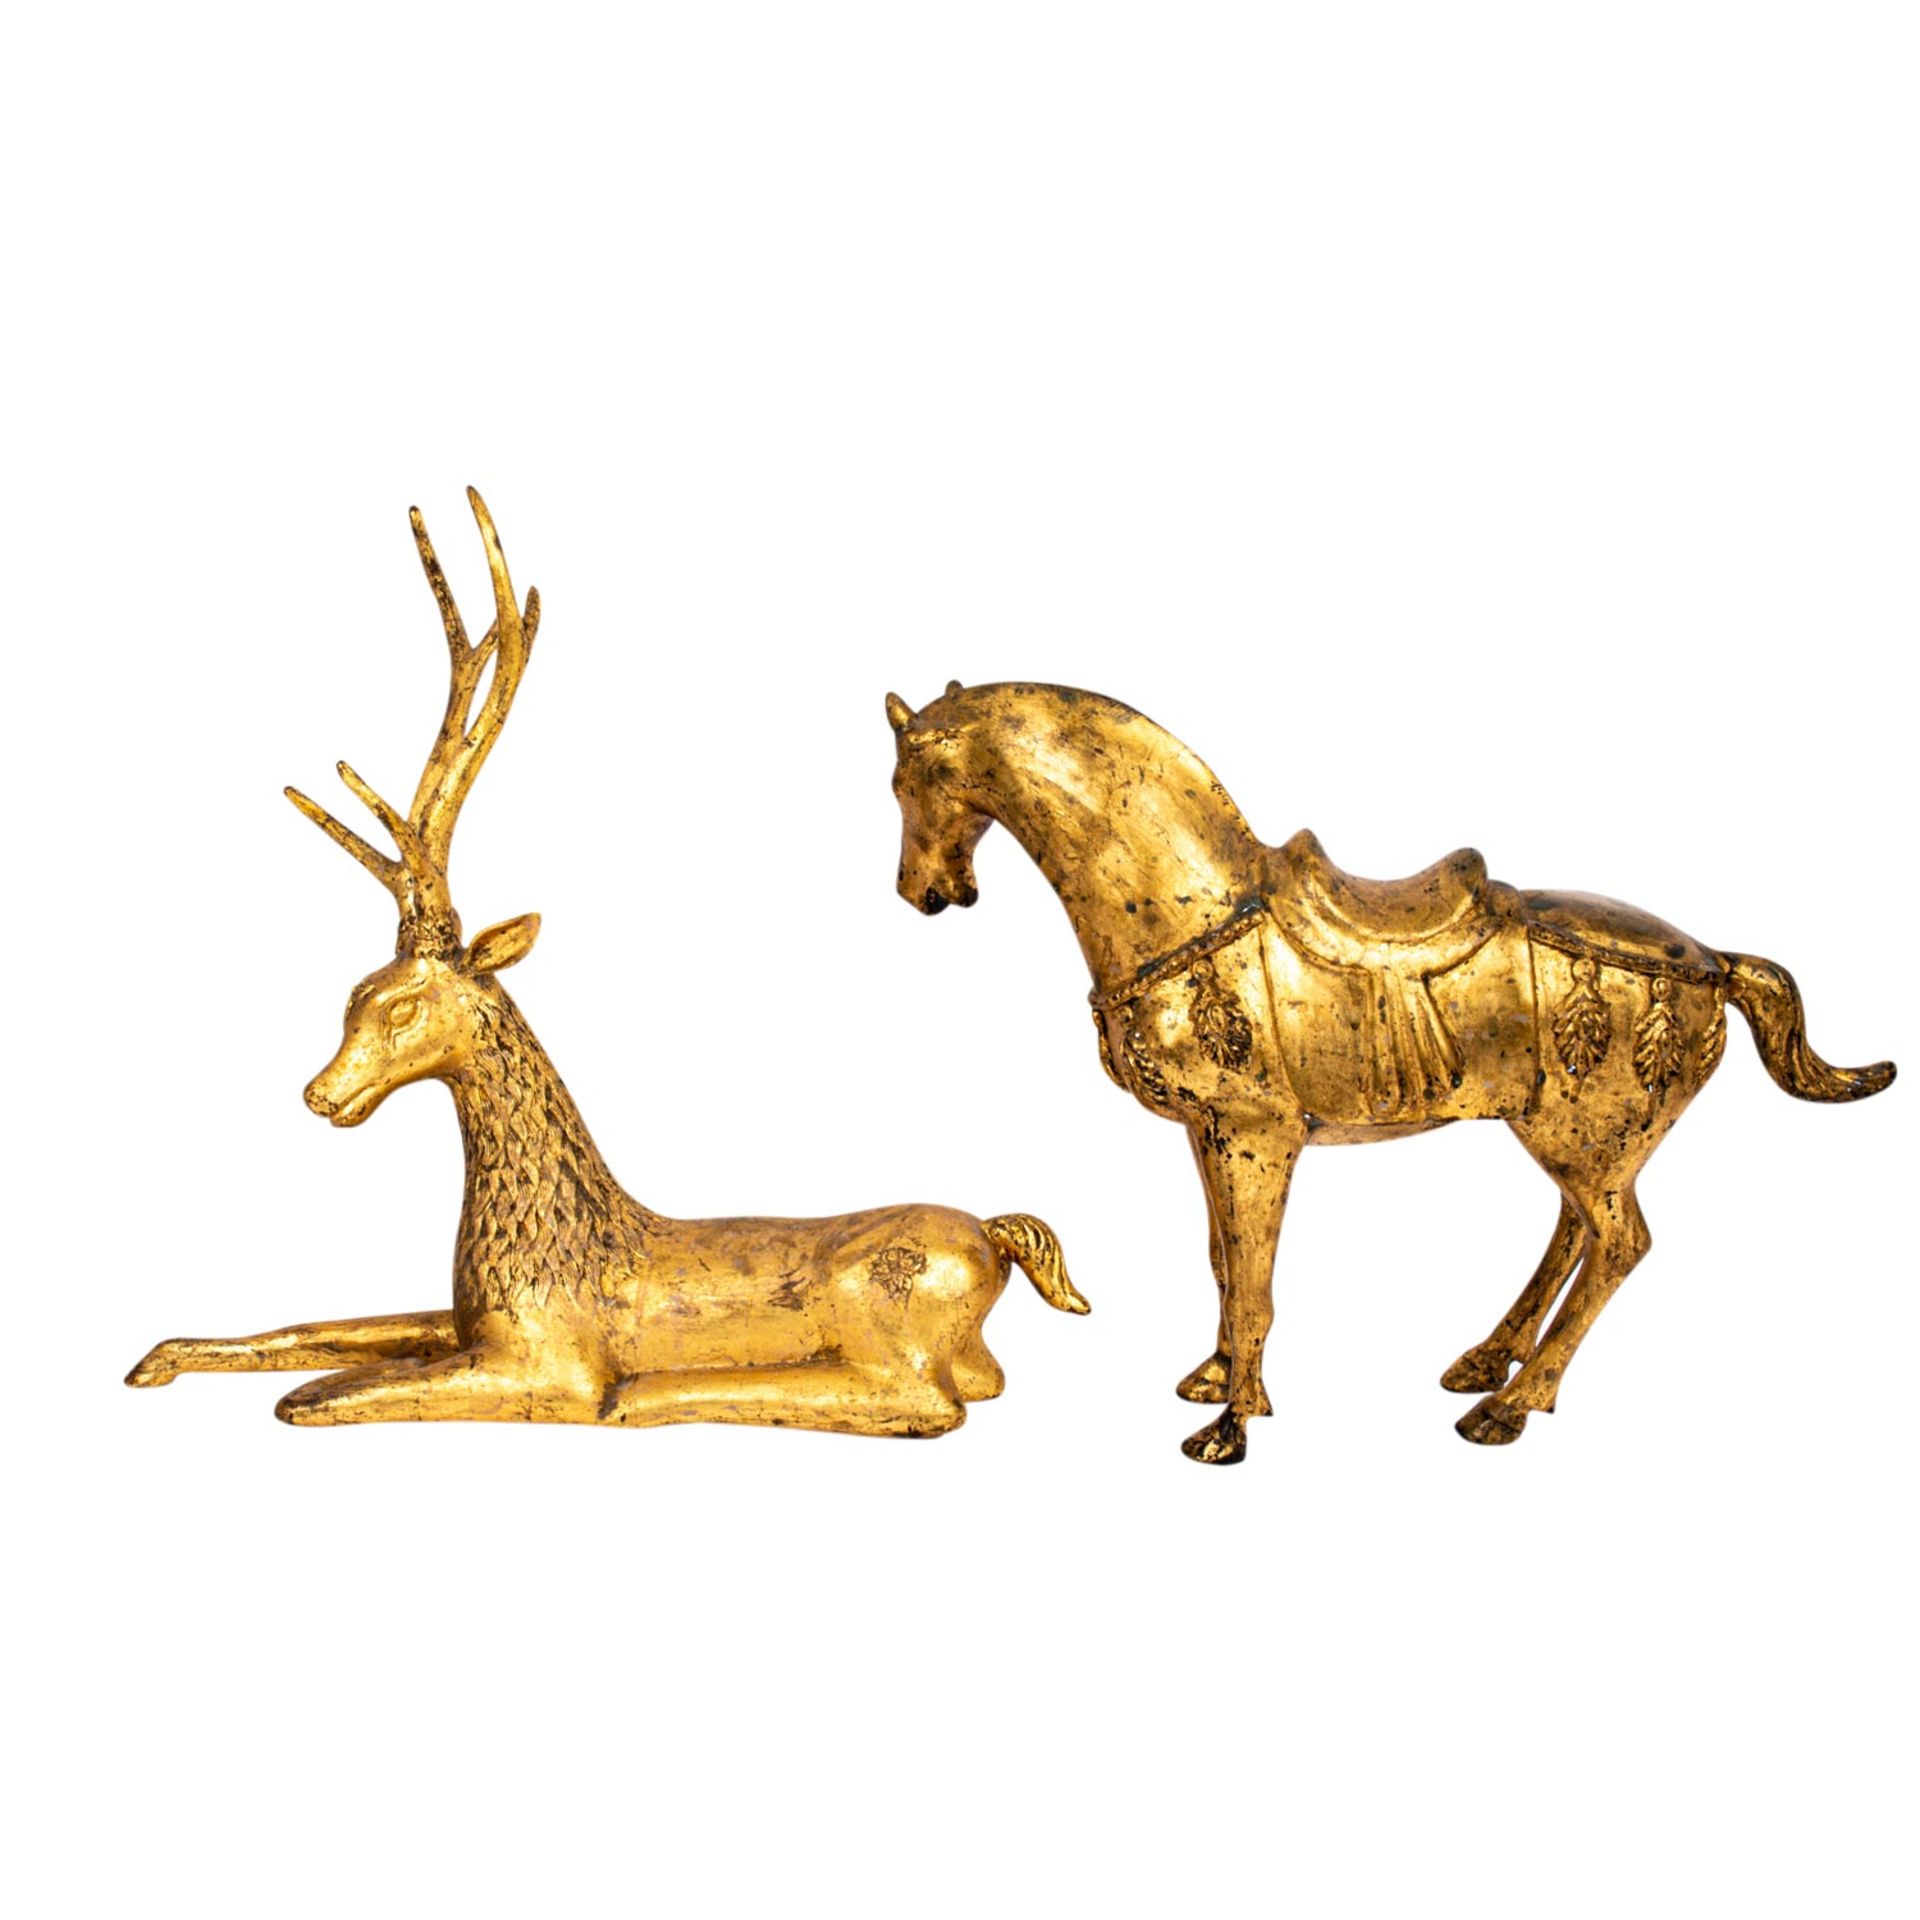 4 Tierfiguren aus SÜDOSTASIEN:1 liegender Löwe,1 stehendes Pferd, 1 liegender Hirsch - Image 5 of 7